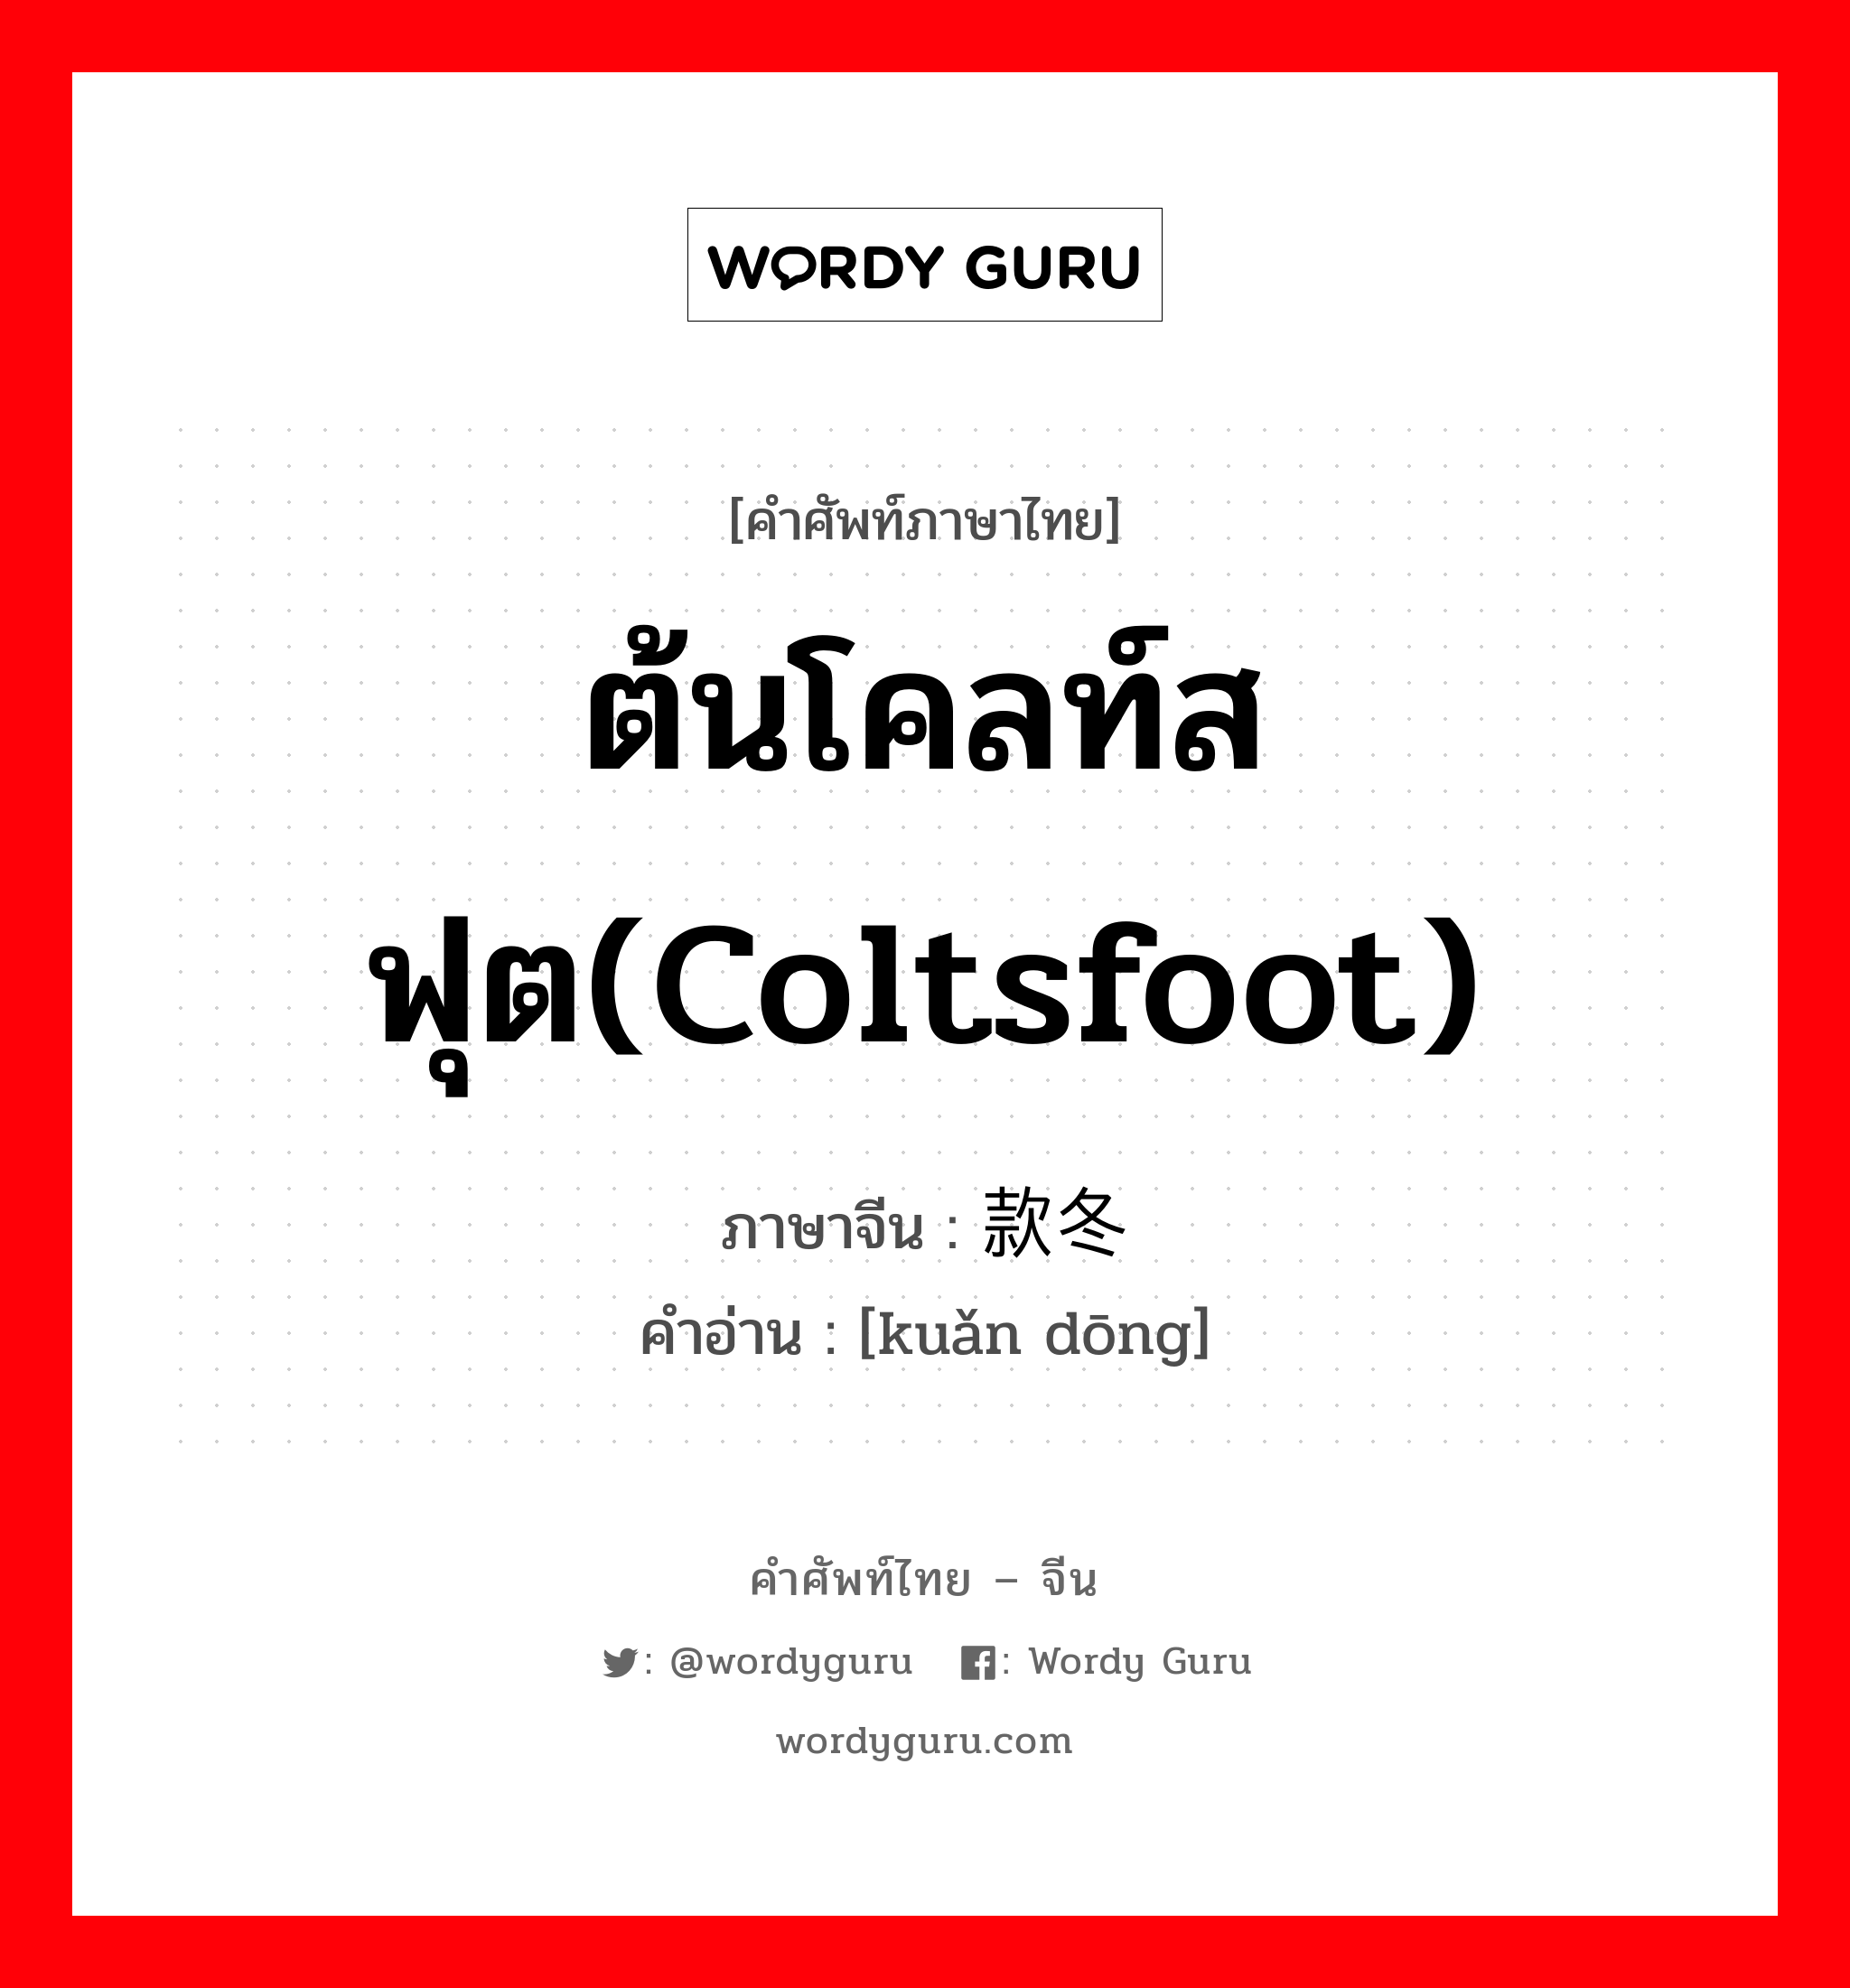 ต้นโคลท์สฟุต(coltsfoot) ภาษาจีนคืออะไร, คำศัพท์ภาษาไทย - จีน ต้นโคลท์สฟุต(coltsfoot) ภาษาจีน 款冬 คำอ่าน [kuǎn dōng]